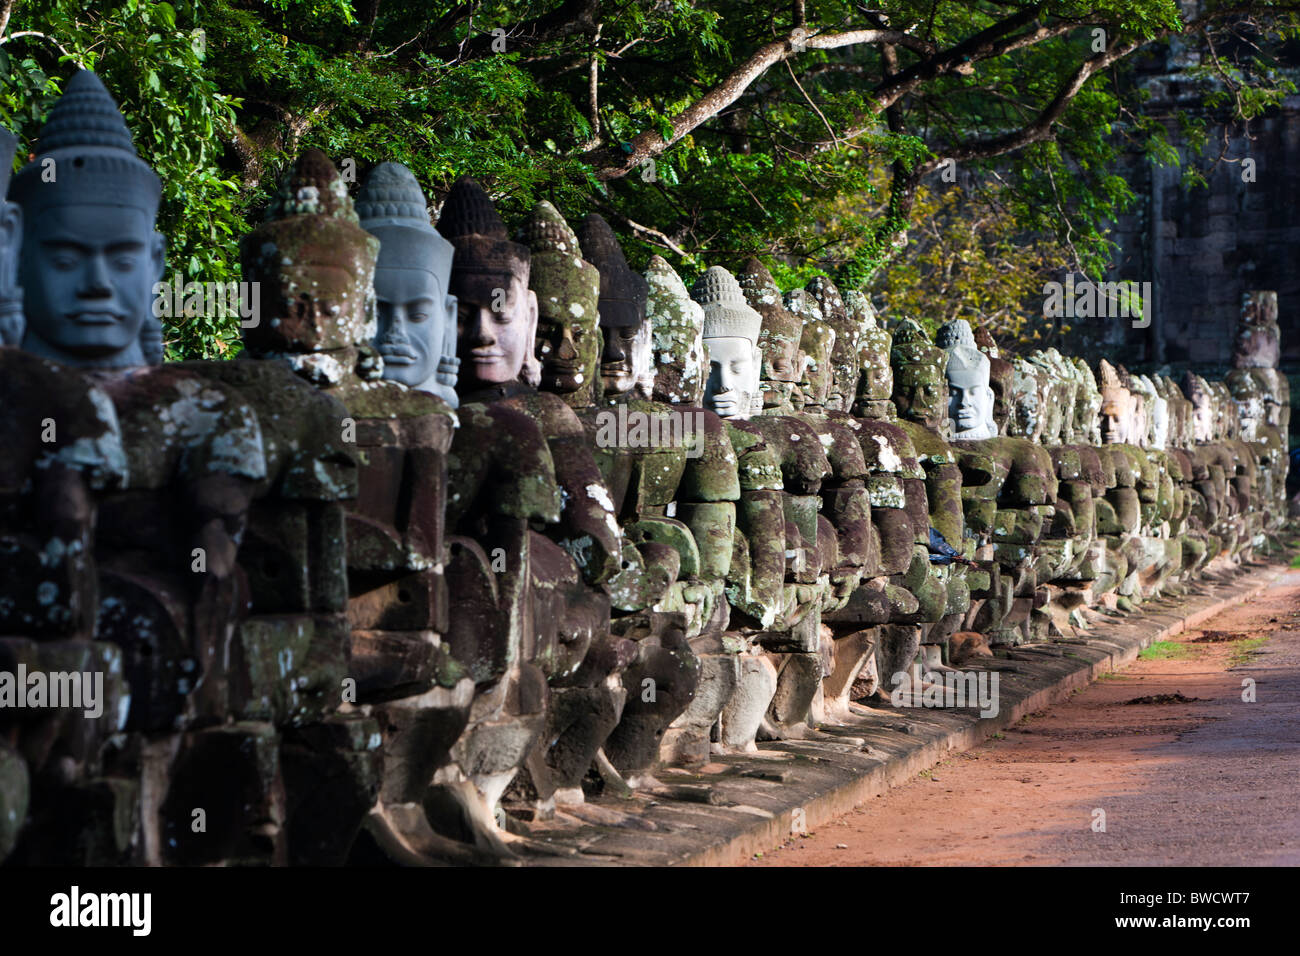 Sculptures en pierre du pont frontière au temple Angkor Thom à Angkor. Le Cambodge. Asie Banque D'Images